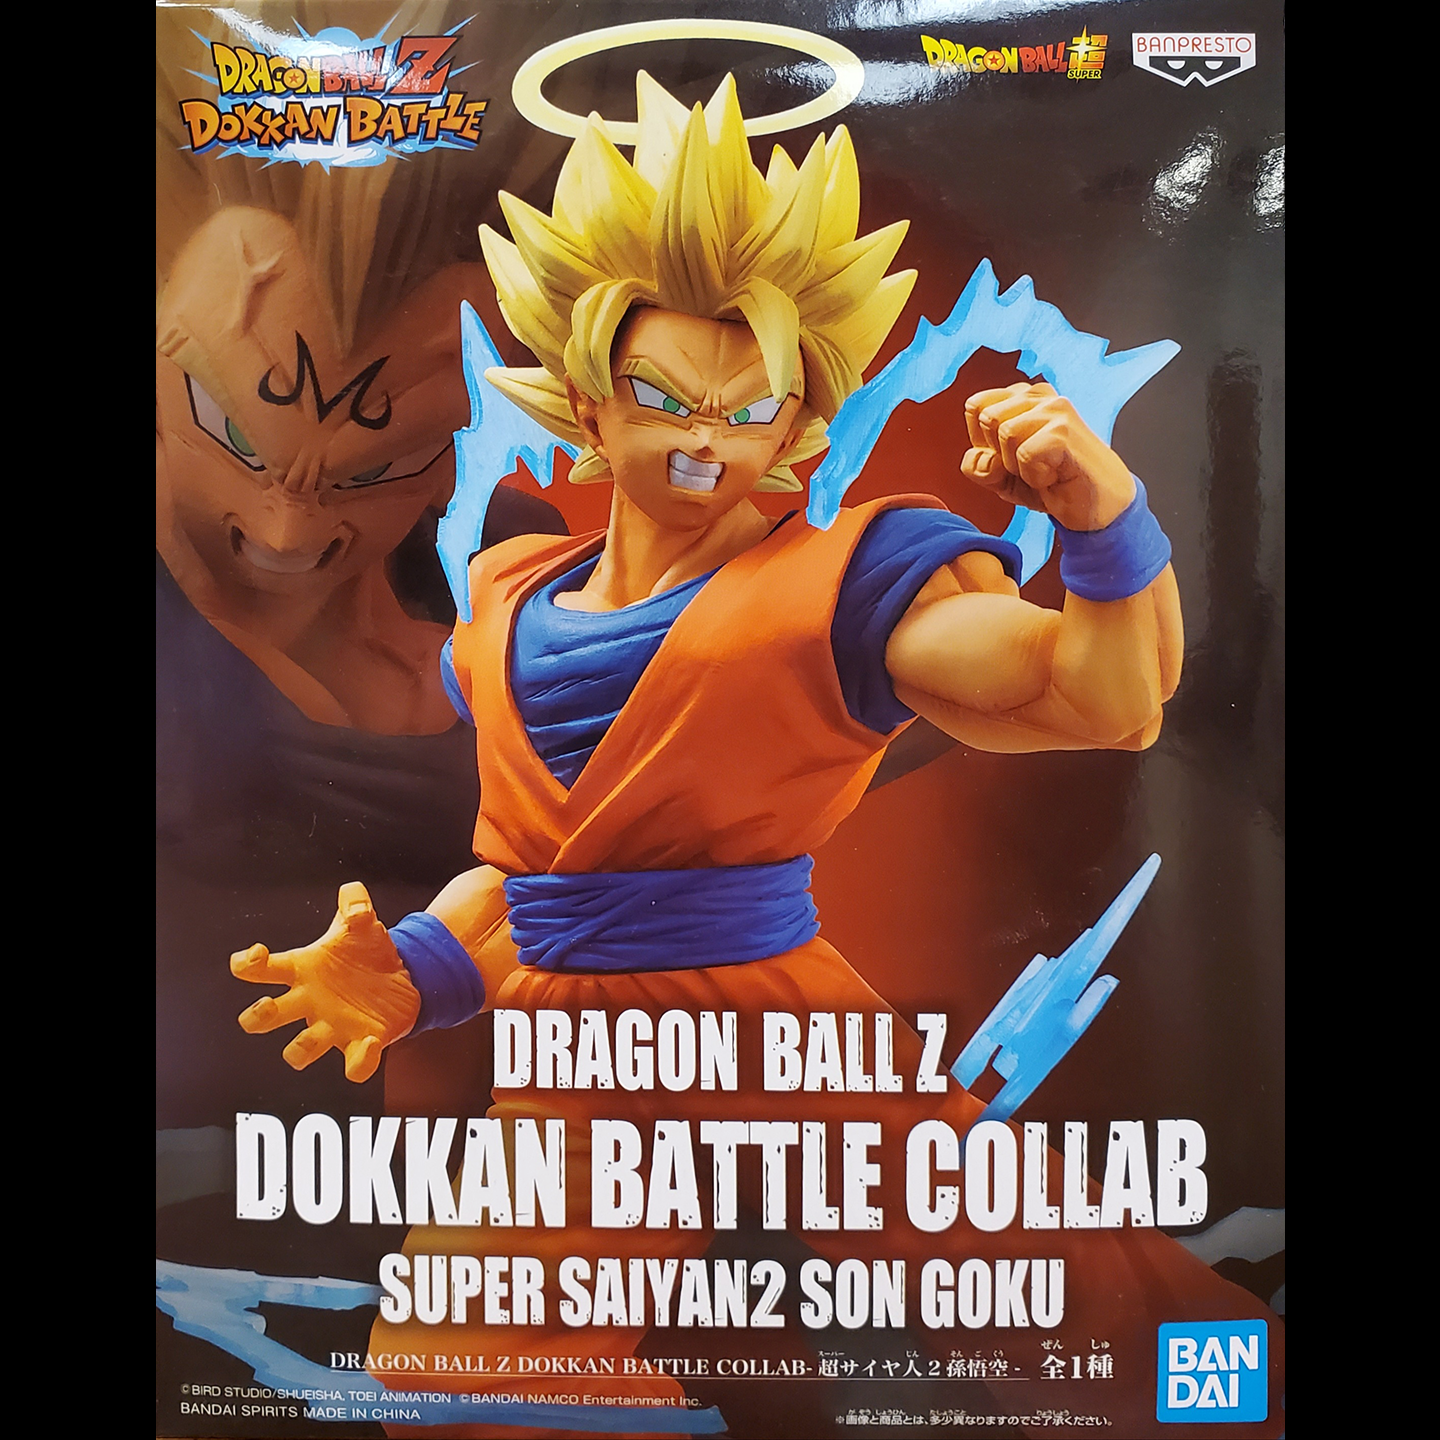 Dragon Ball Z Dokkan Battle Collab Super Saiyan 2 Son Goku | Otaku Cafe